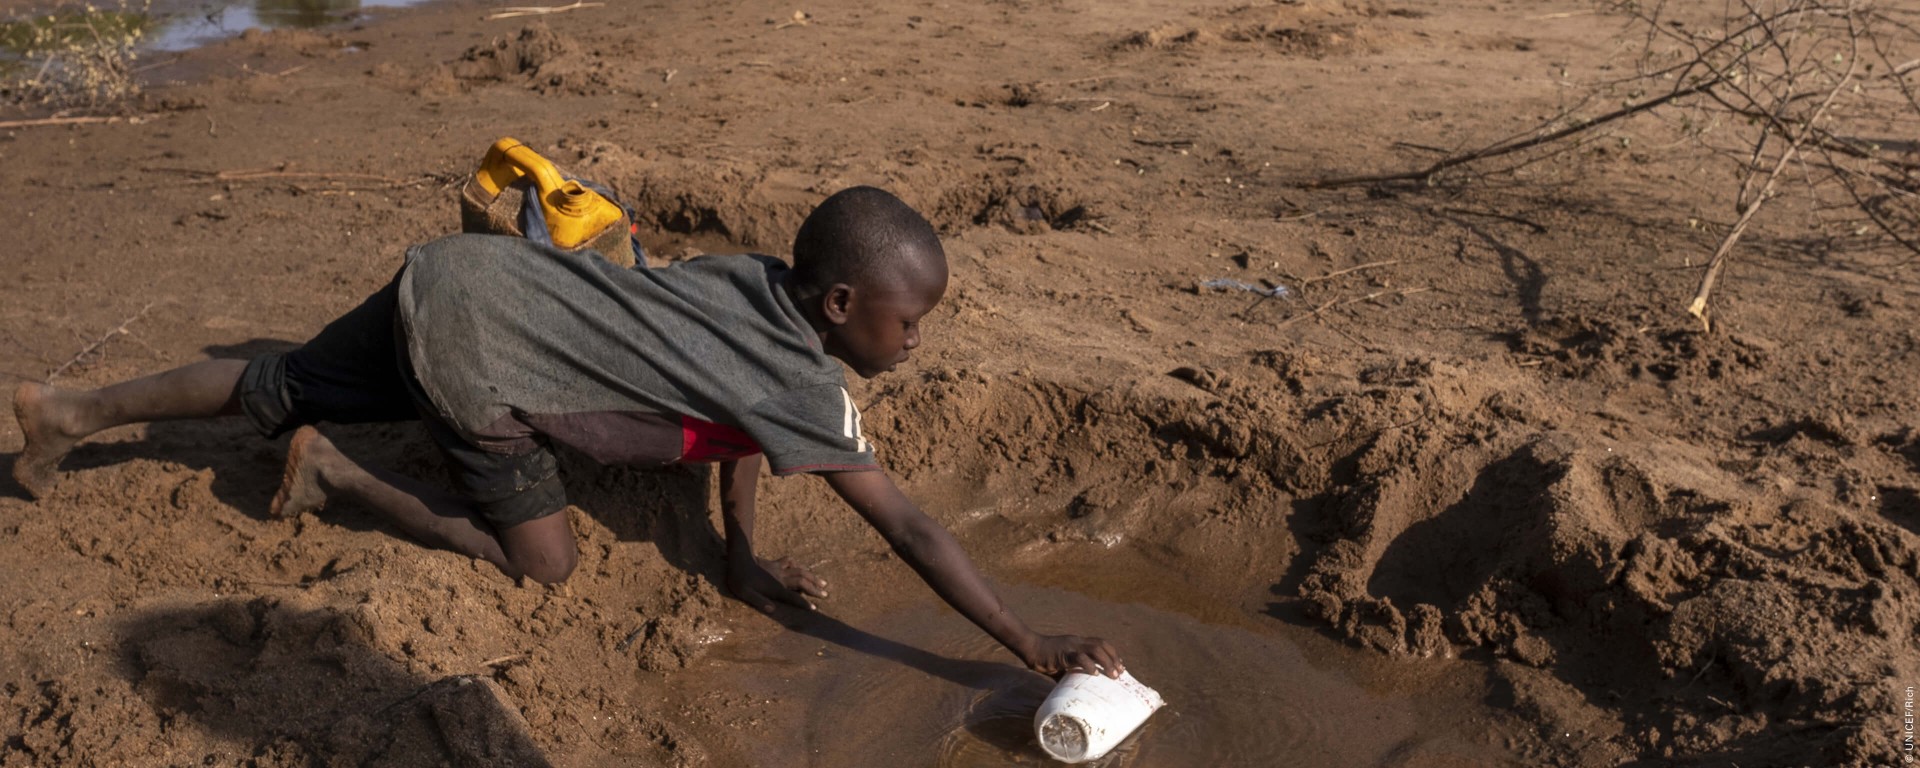 Każde dziecko ma praw do czystej wody